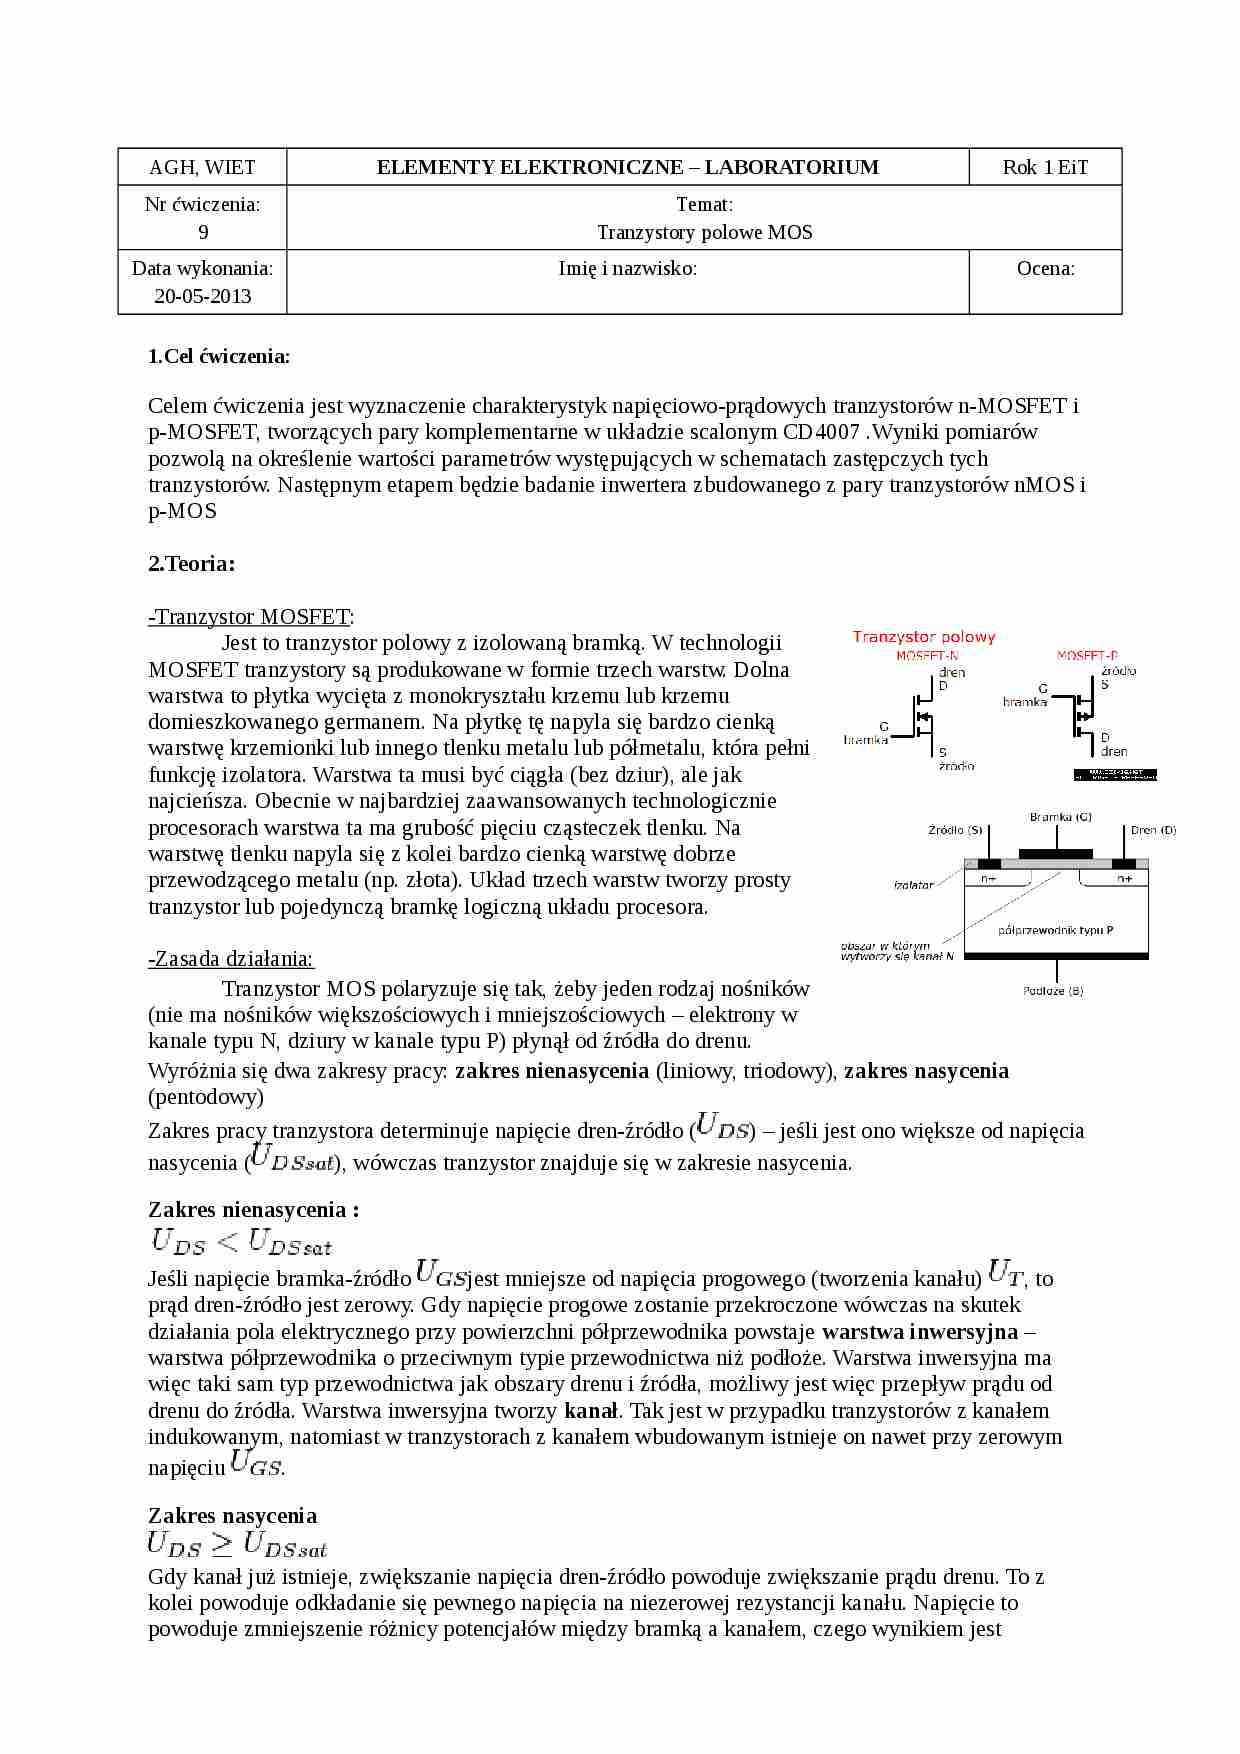 Tranzystory MOS (konspekt) - strona 1